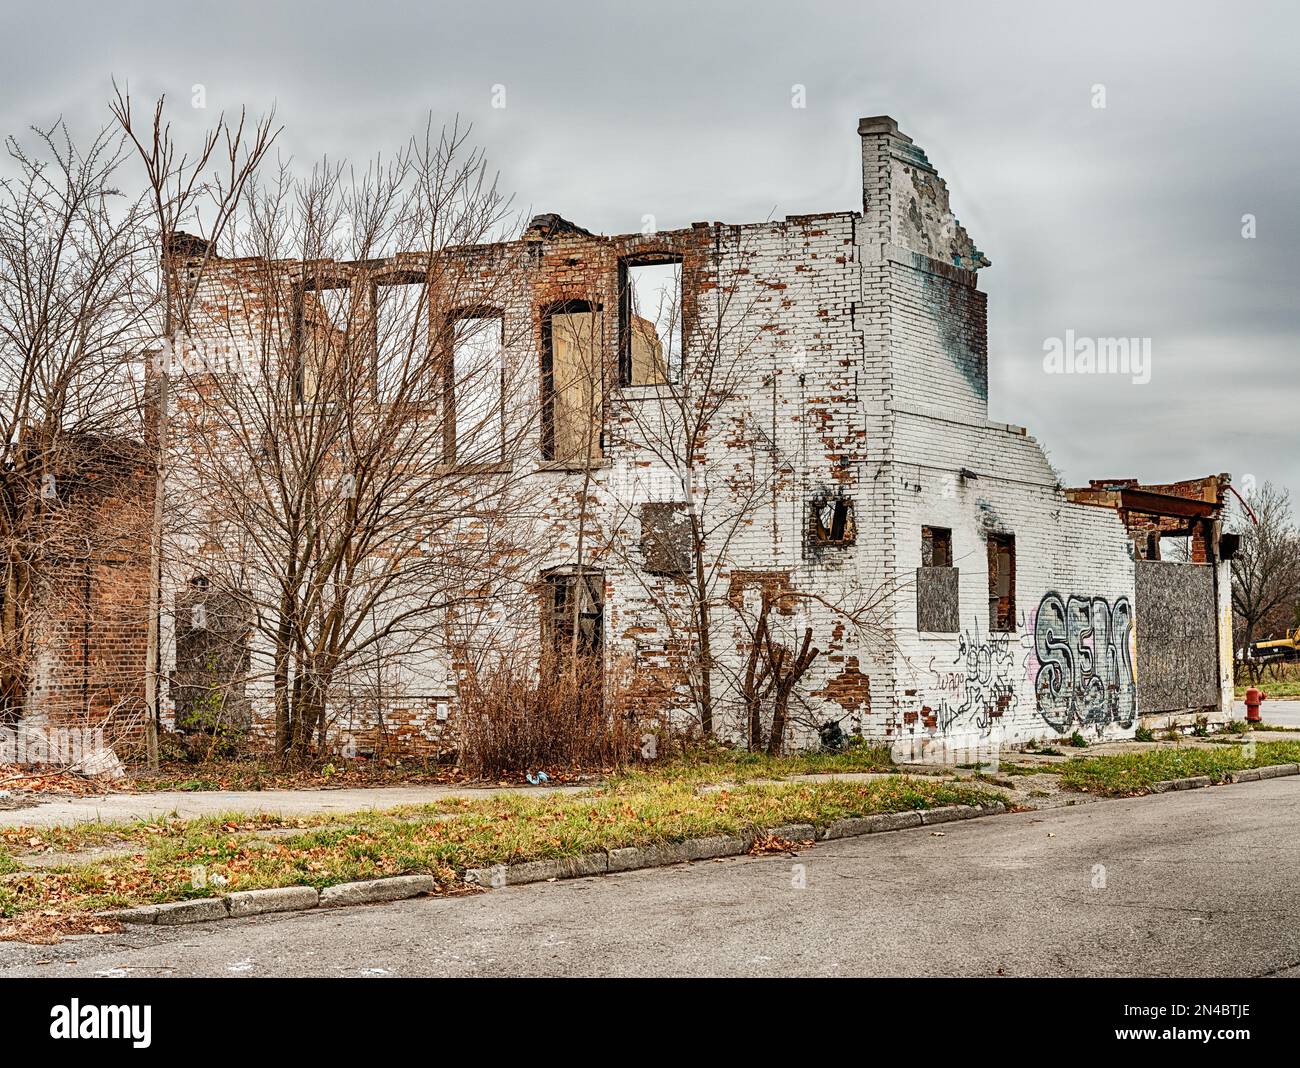 Il faro urbano di Detroit è visibile in un vecchio edificio commerciale in mattoni che è stato abbandonato e parzialmente distrutto. Foto Stock